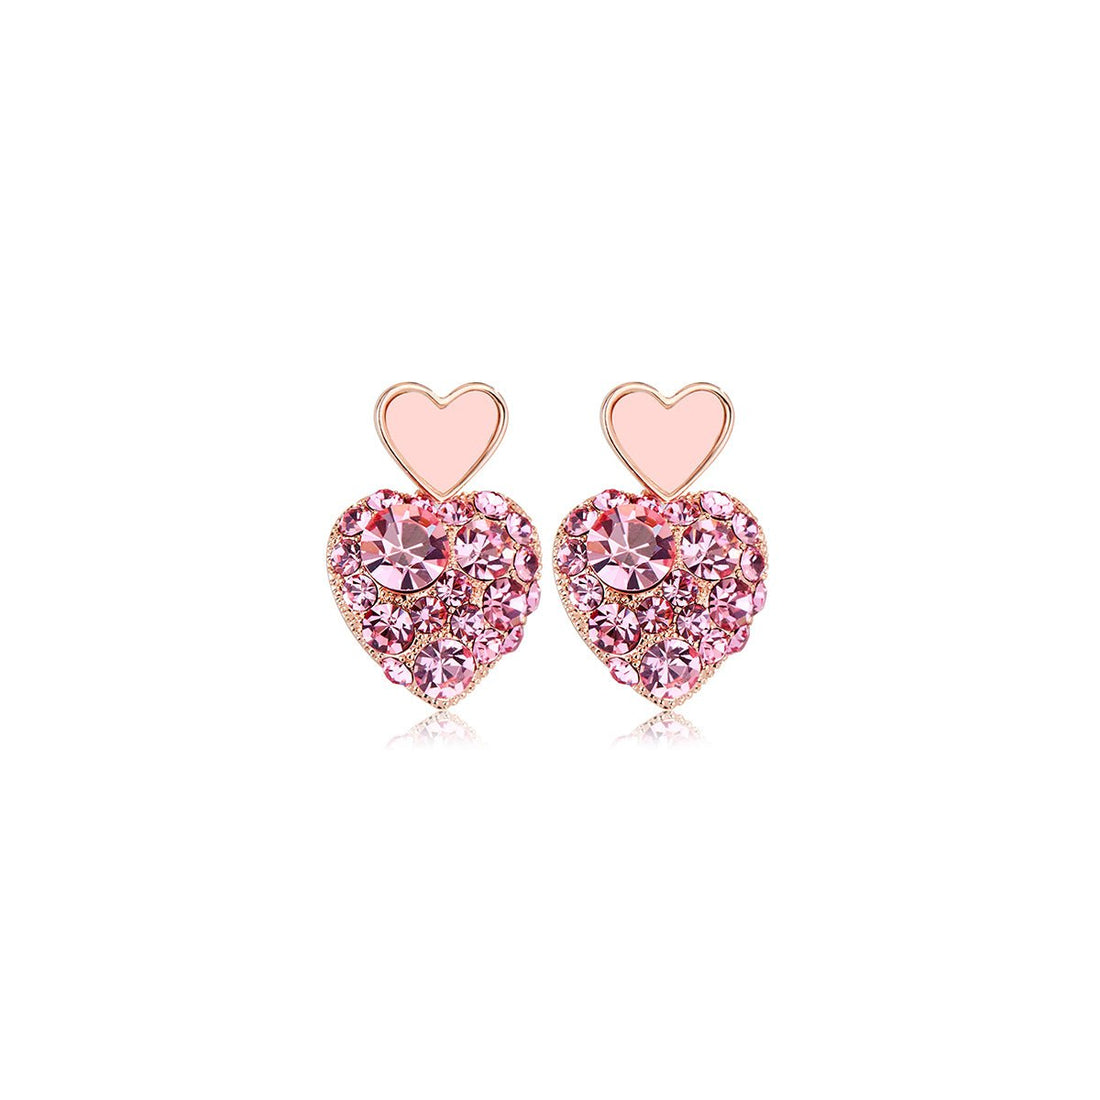 Sweetie Heart Pink Earrings - 0cm